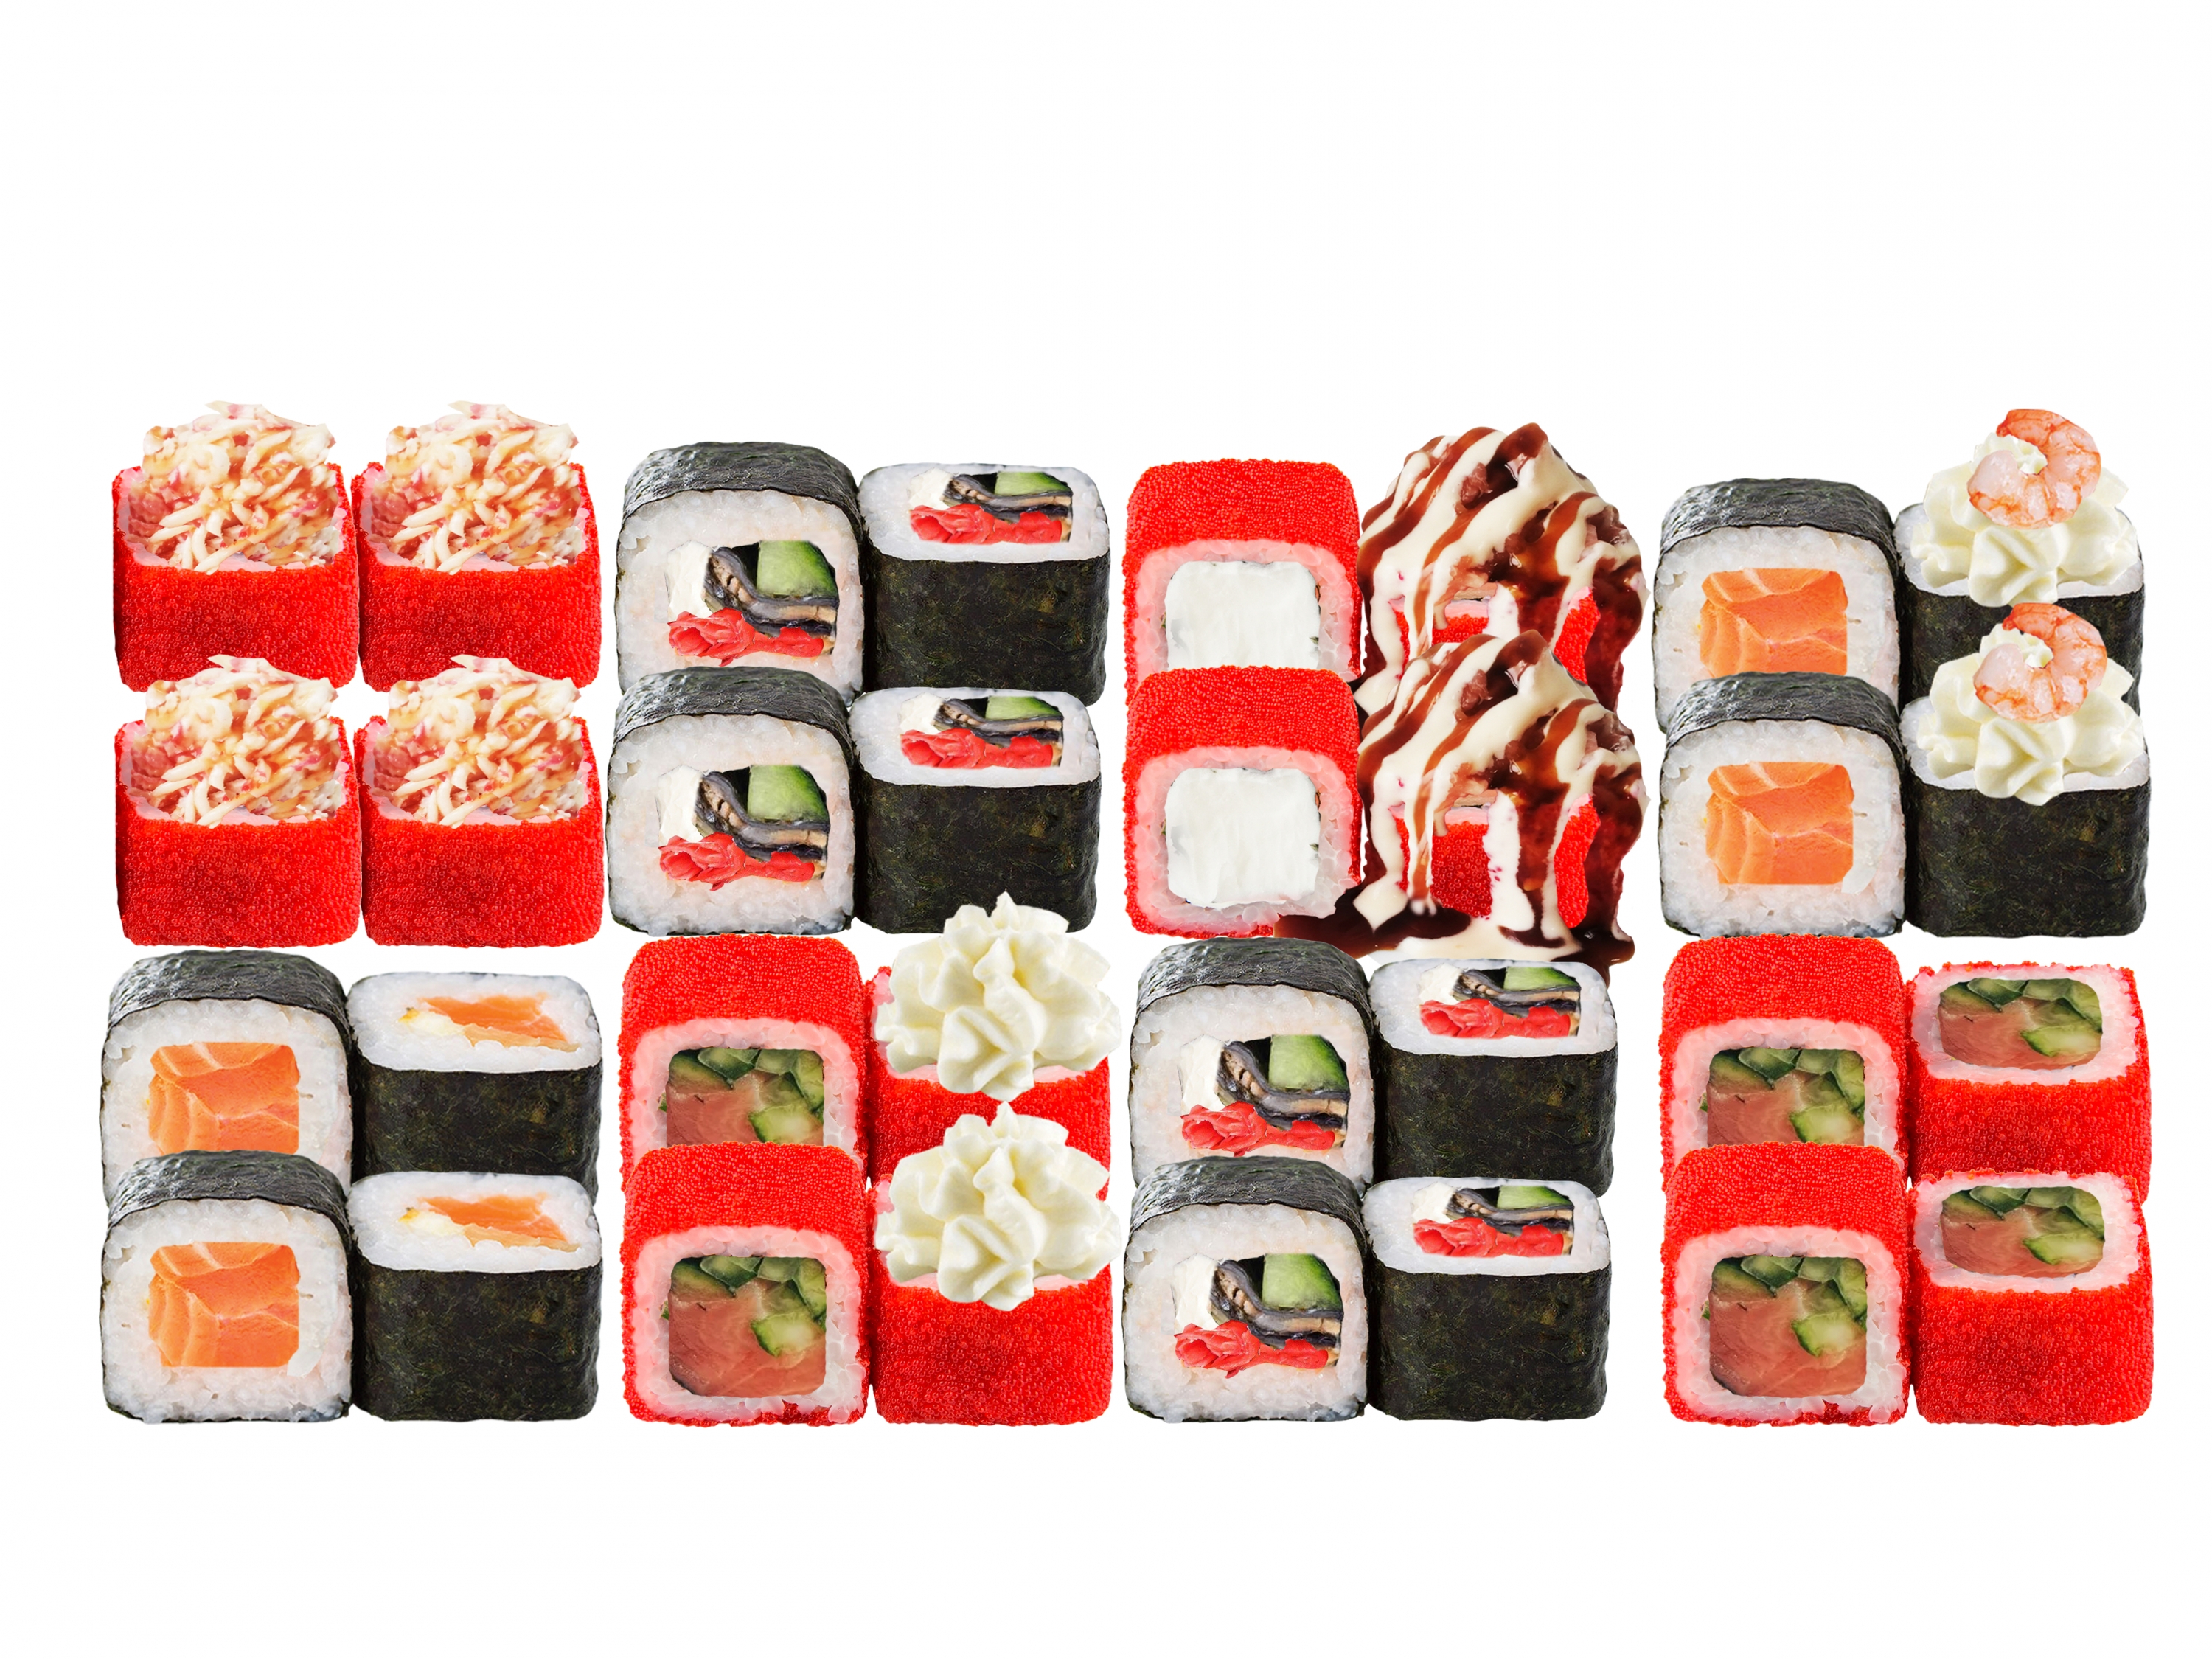 Заказать суши с доставкой мафия фото 101